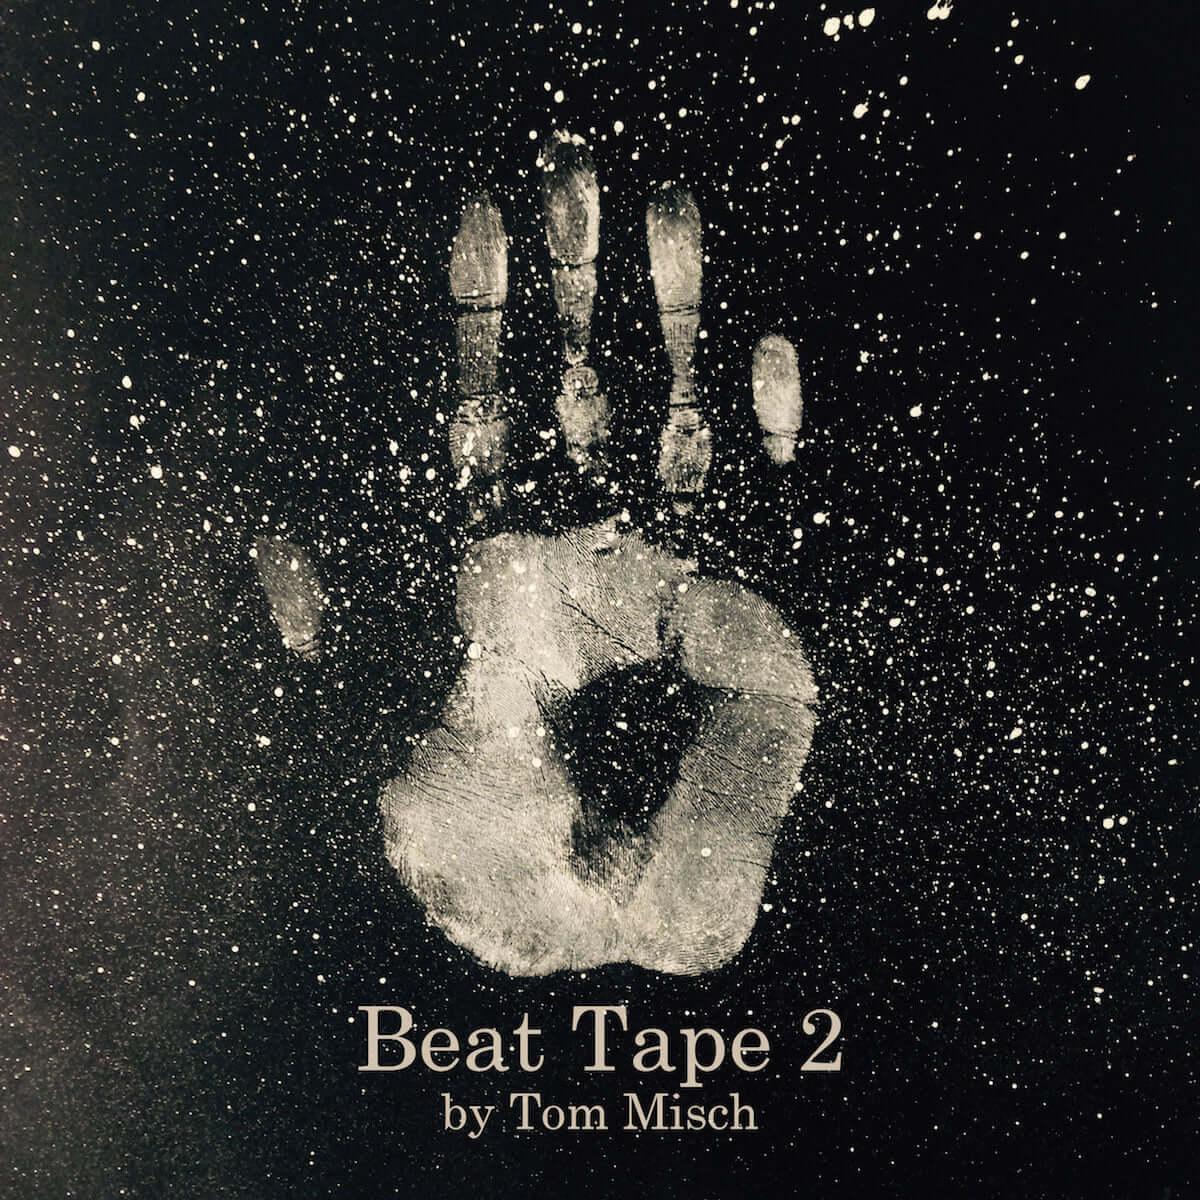 Tom Mischの注目作「Beat Tape 2」のCDリリースが決定！さらにデビューアルバム『Geography』がタワレコメンアワード初の受賞作品に music181220-tom-misch-1-1200x1200